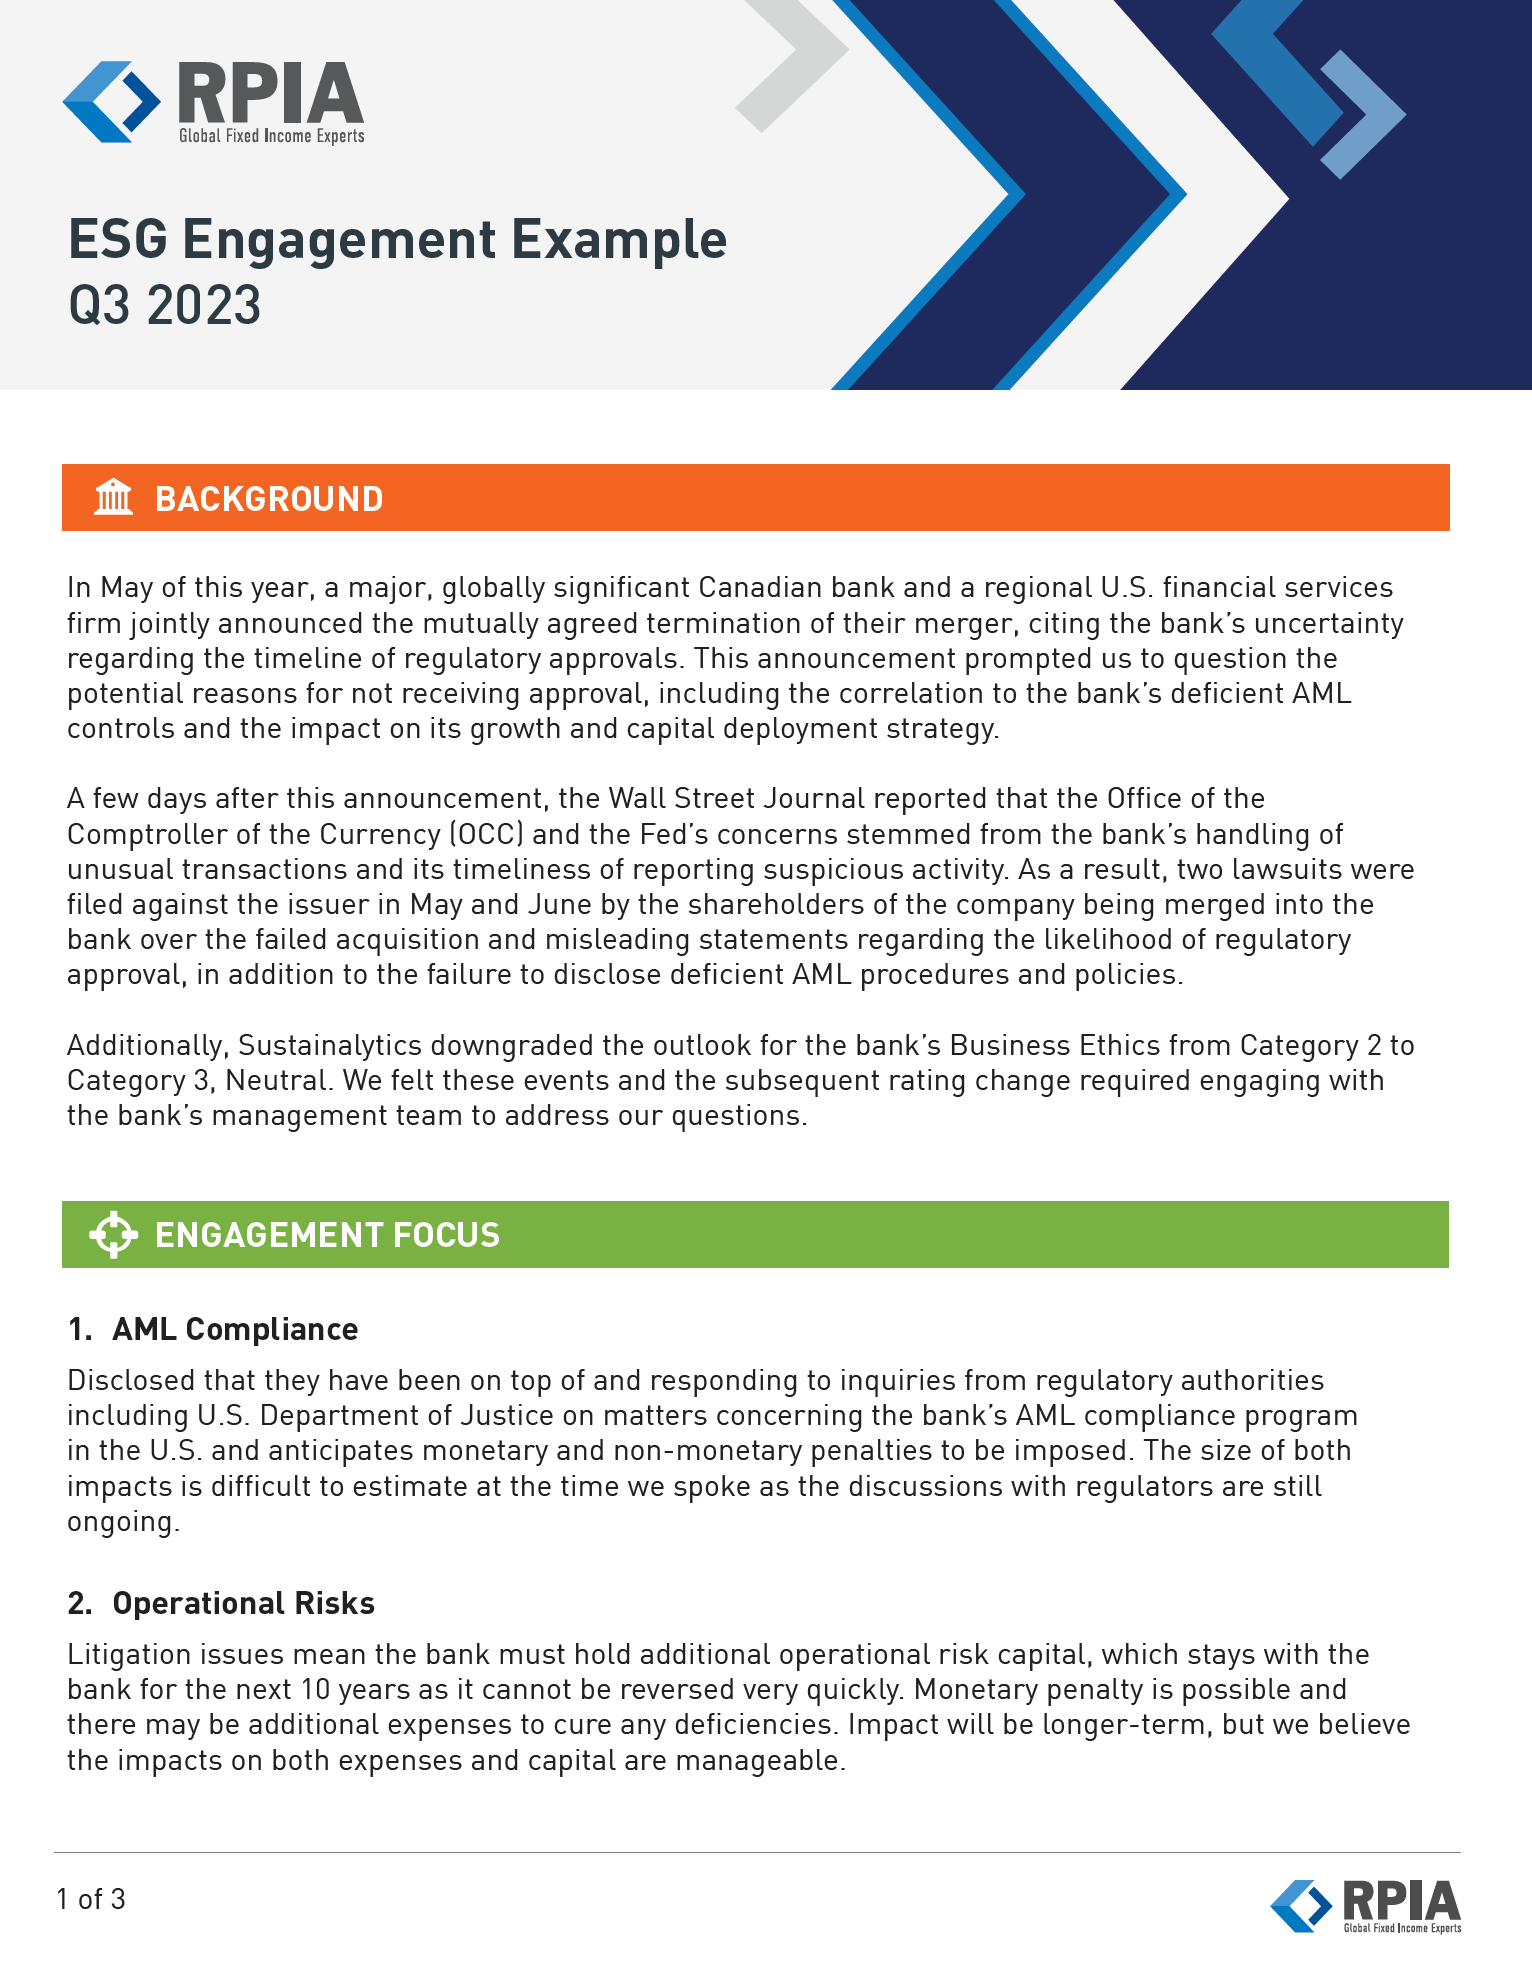 Q3 2023 ESG Engagement Example